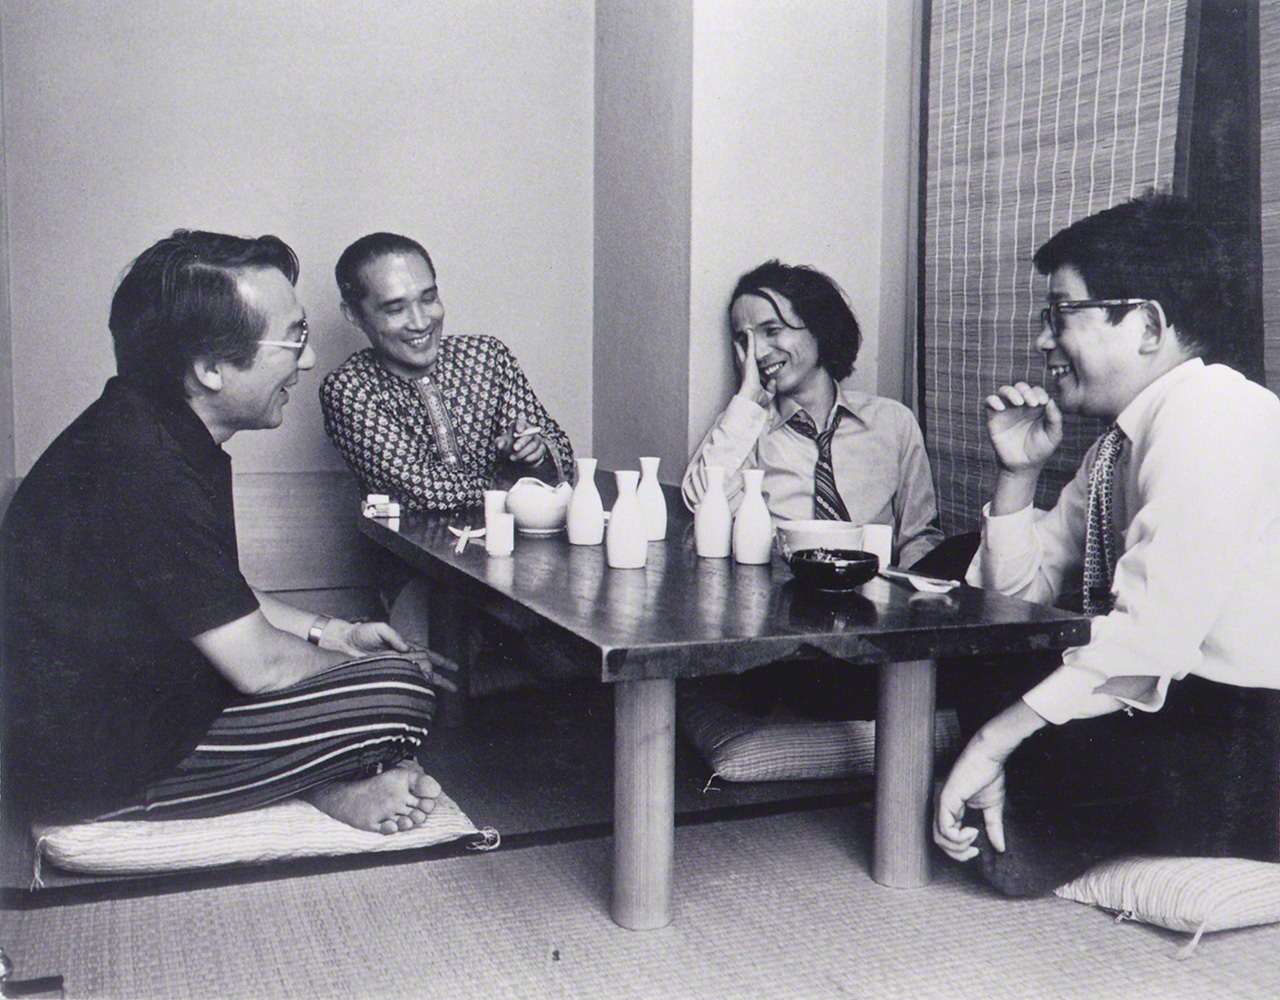 親しい仲間と歓談。左から作曲家の湯浅譲二、詩人の谷川俊太郎、武満、作家の大江健三郎。1970年代。